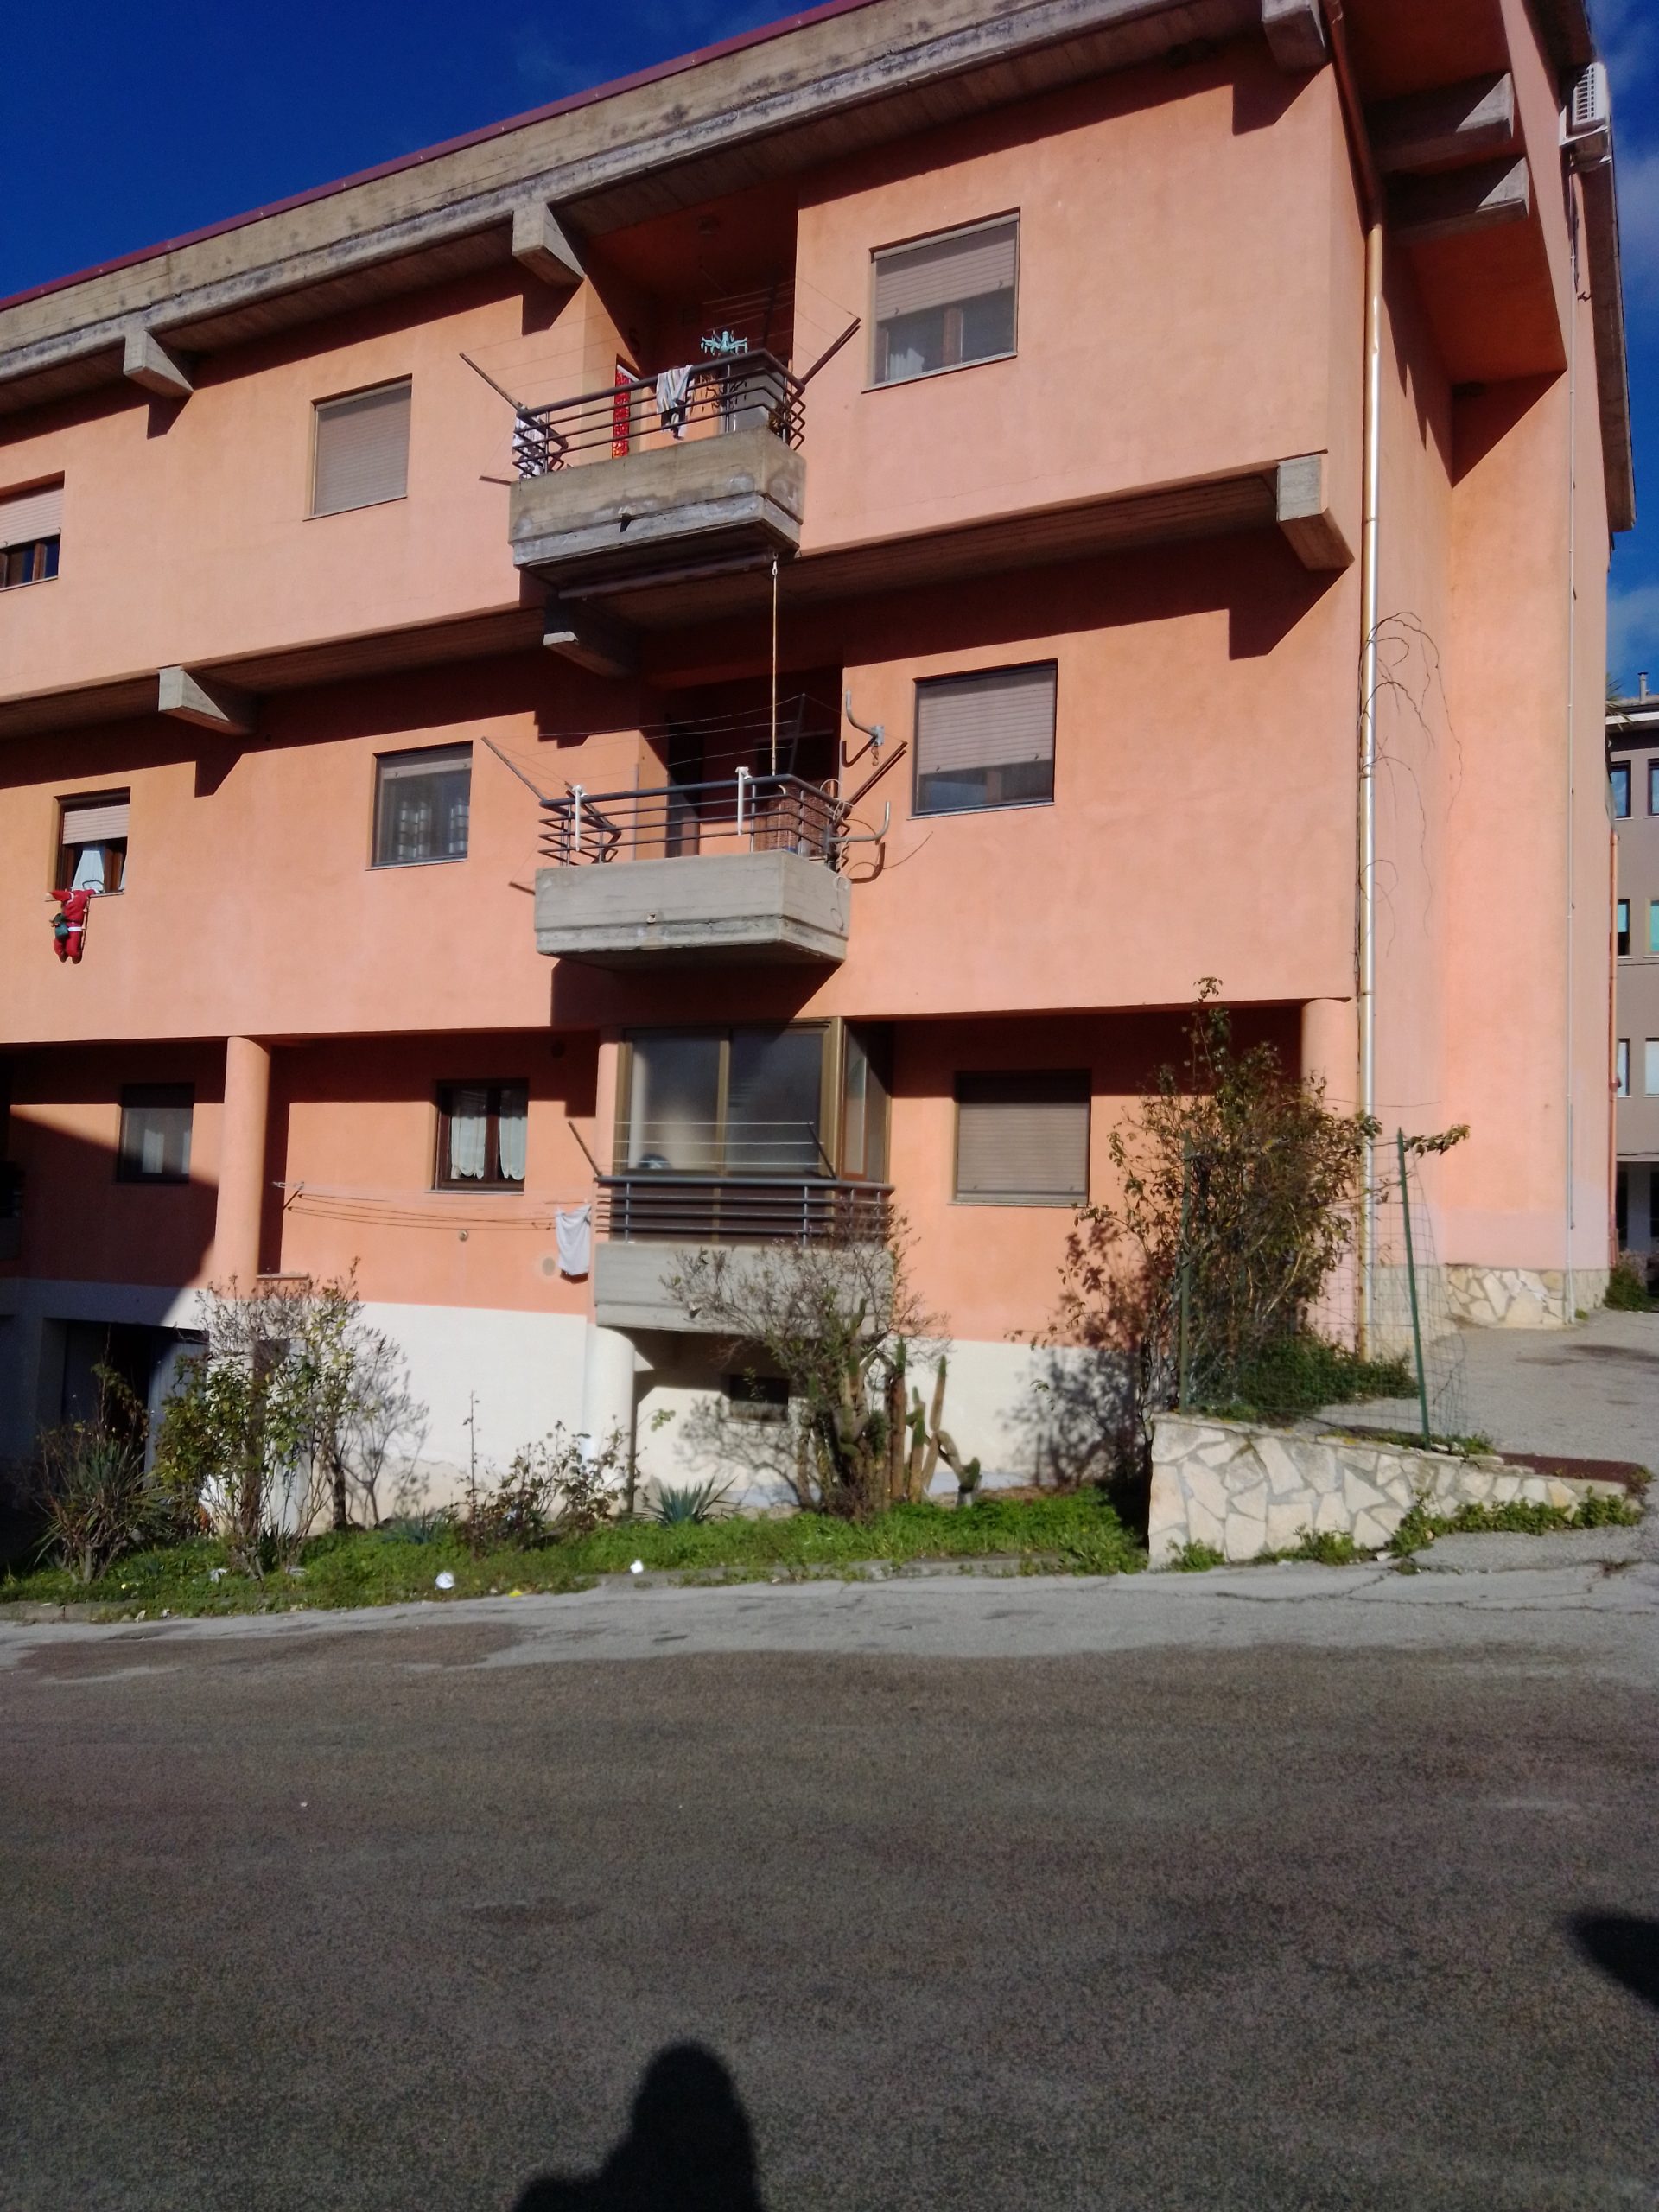 Al momento stai visualizzando Immobiliare Jhons – agenzia immobiliare Nicosia Enna Sicilia